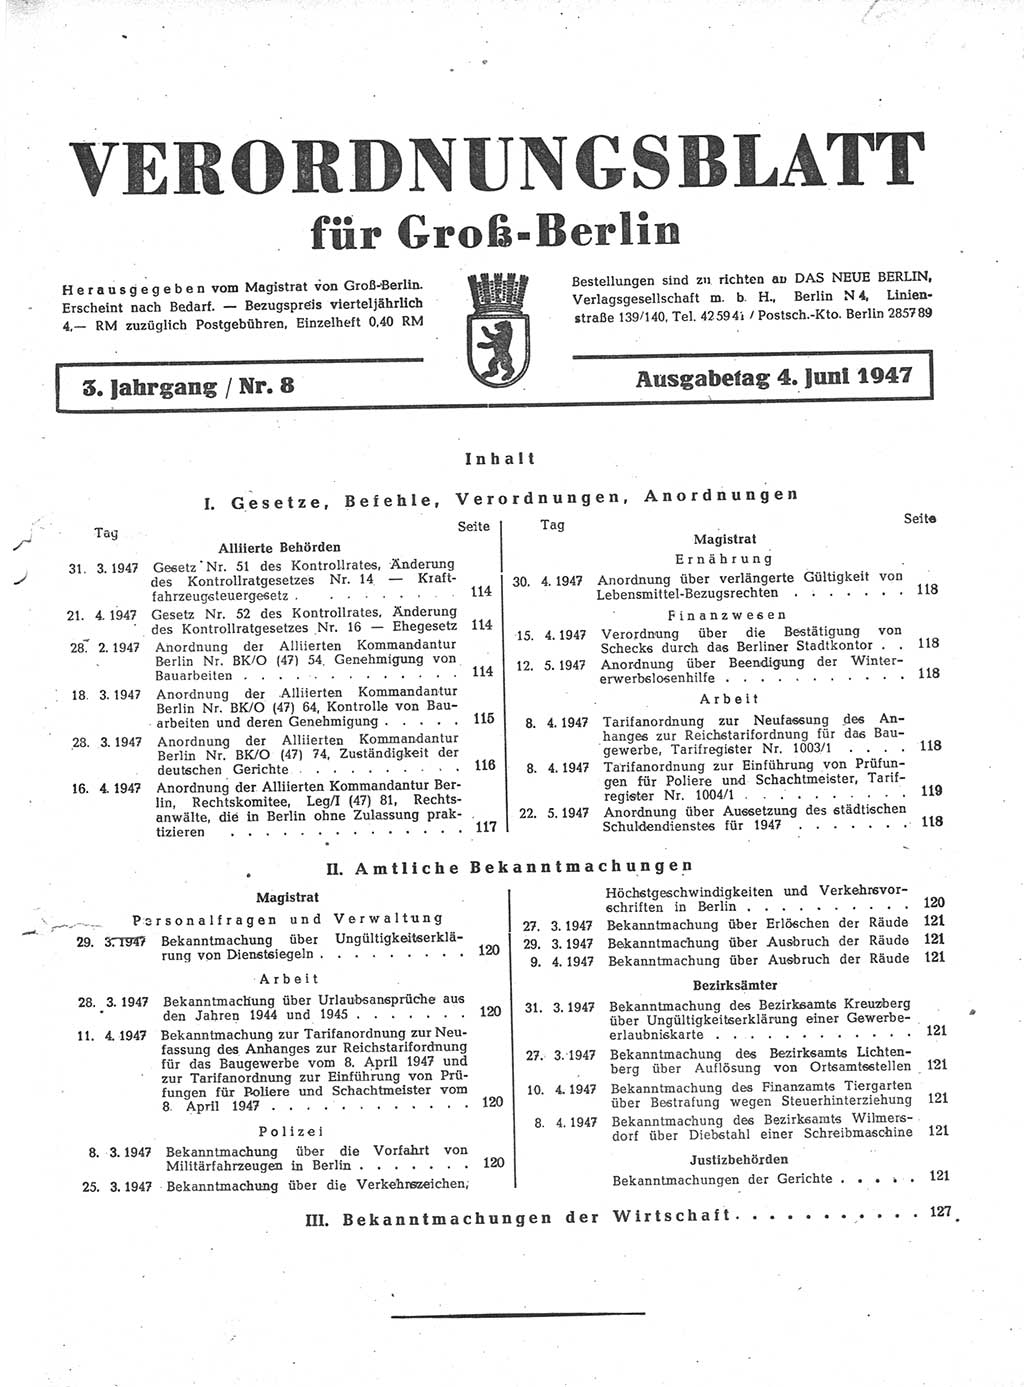 Verordnungsblatt (VOBl.) für Groß-Berlin 1947, Seite 113 (VOBl. Bln. 1947, S. 113)